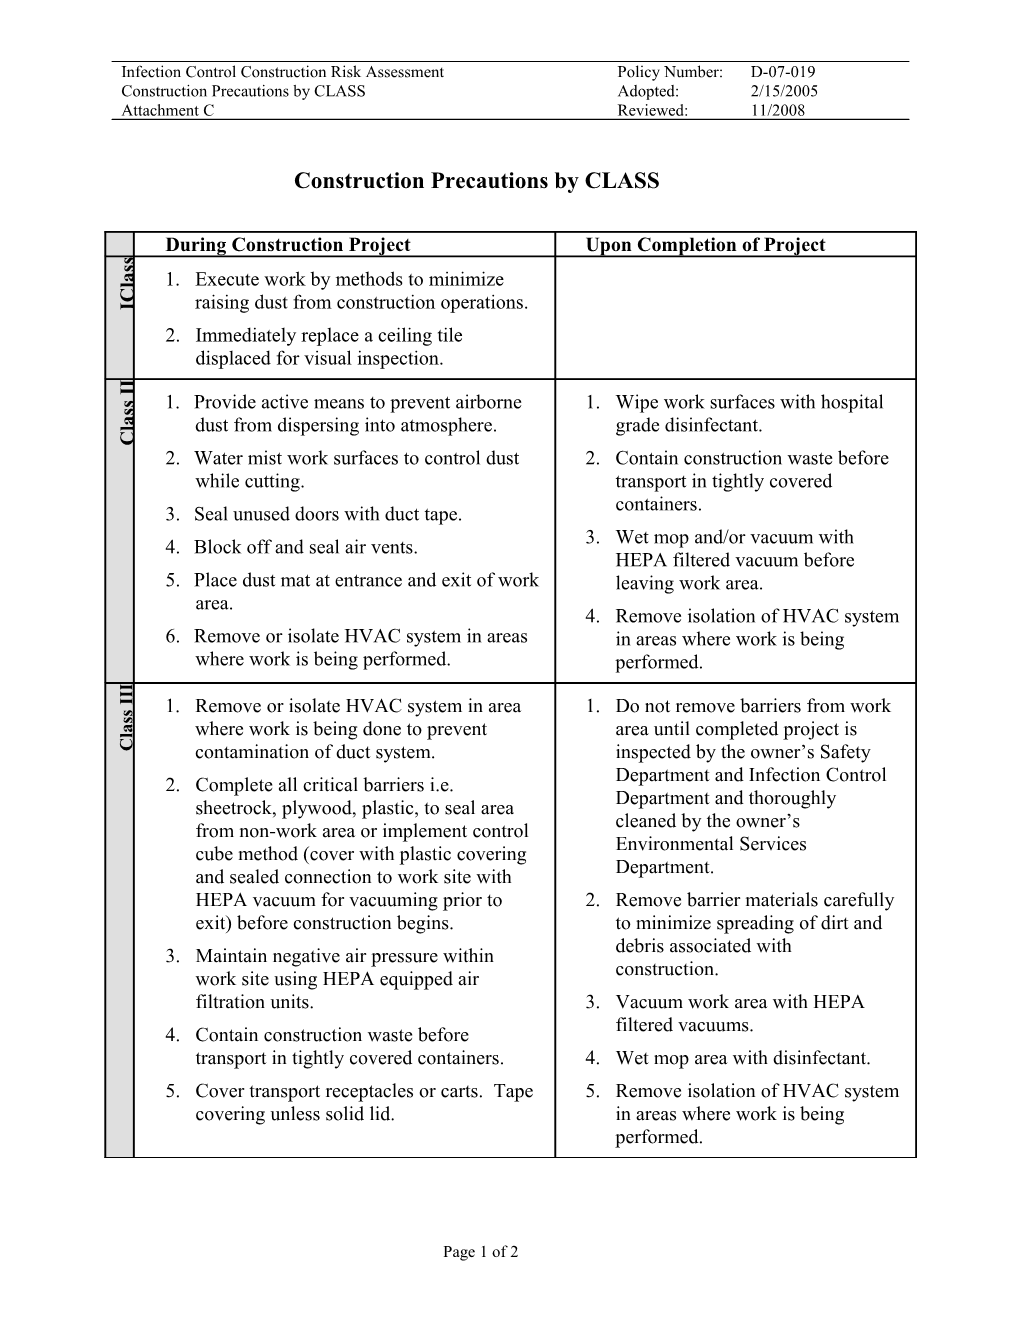 D-07-019 - Attachment C, Infection Control Construction Risk Assessment